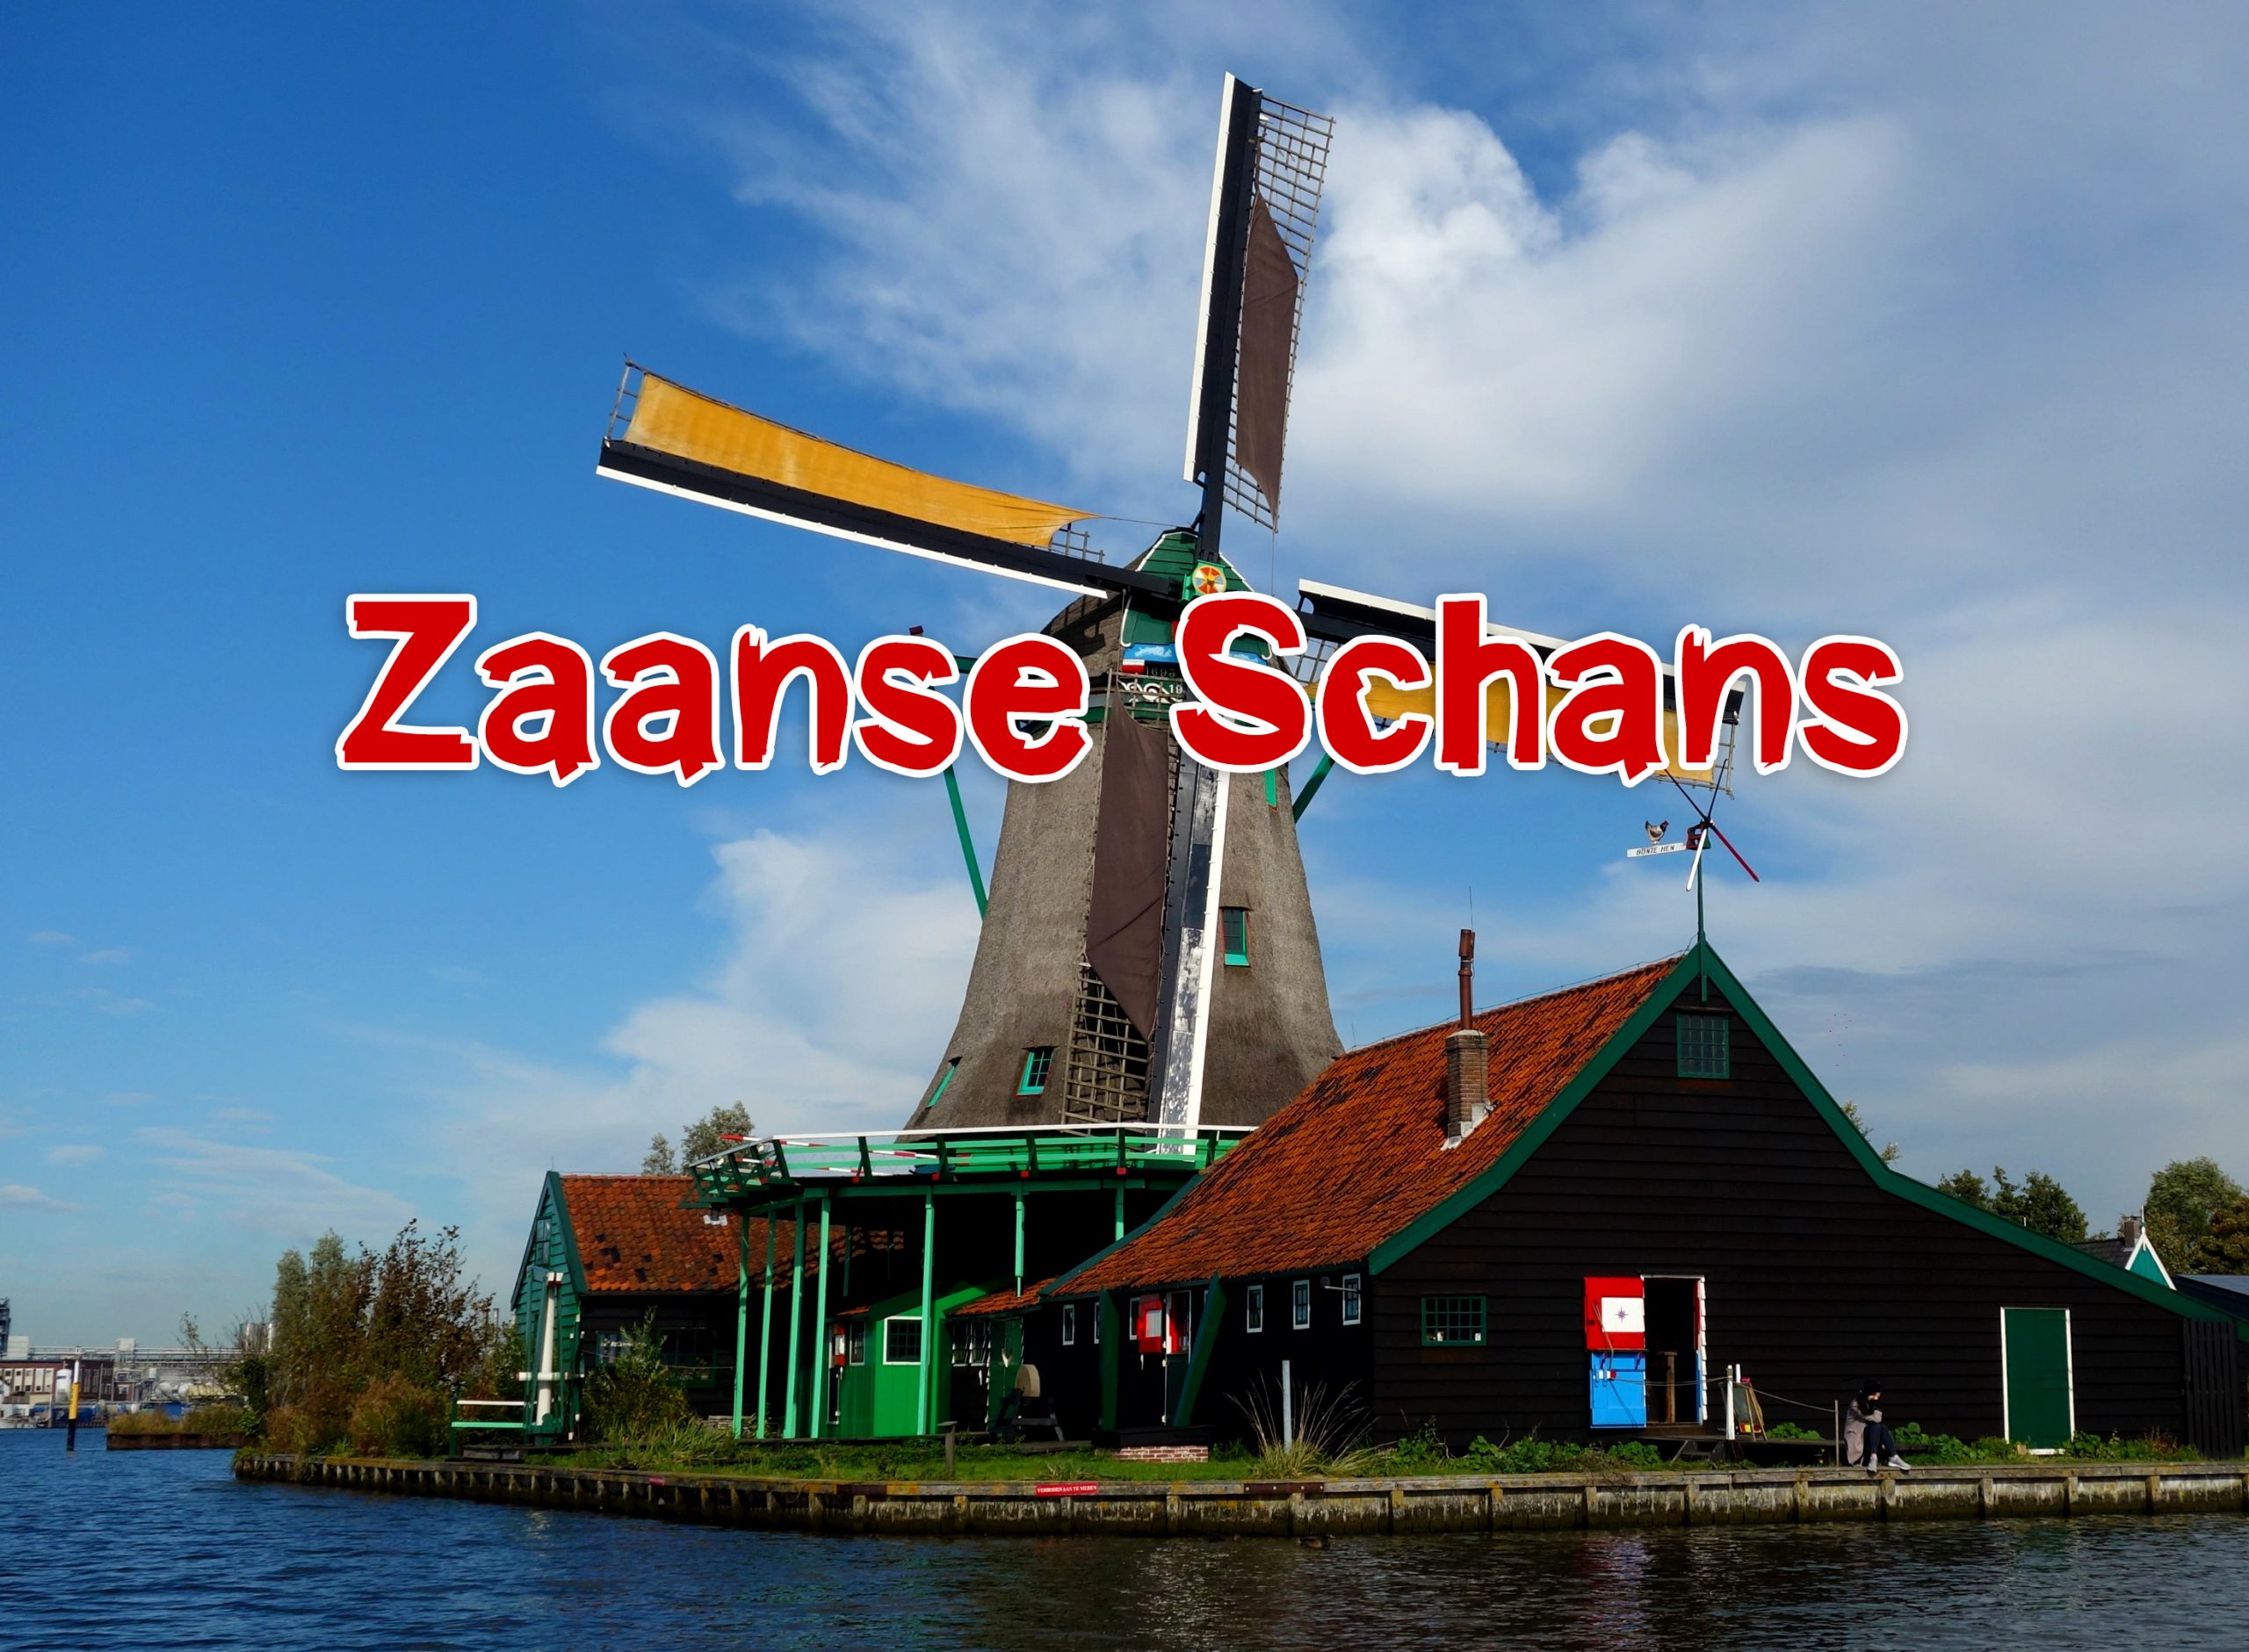 หมู่บ้านกังหันลมซานส์ สคานส์ (Zaanse Schans)  แลนด์มาร์คเนเธอร์แลนด์